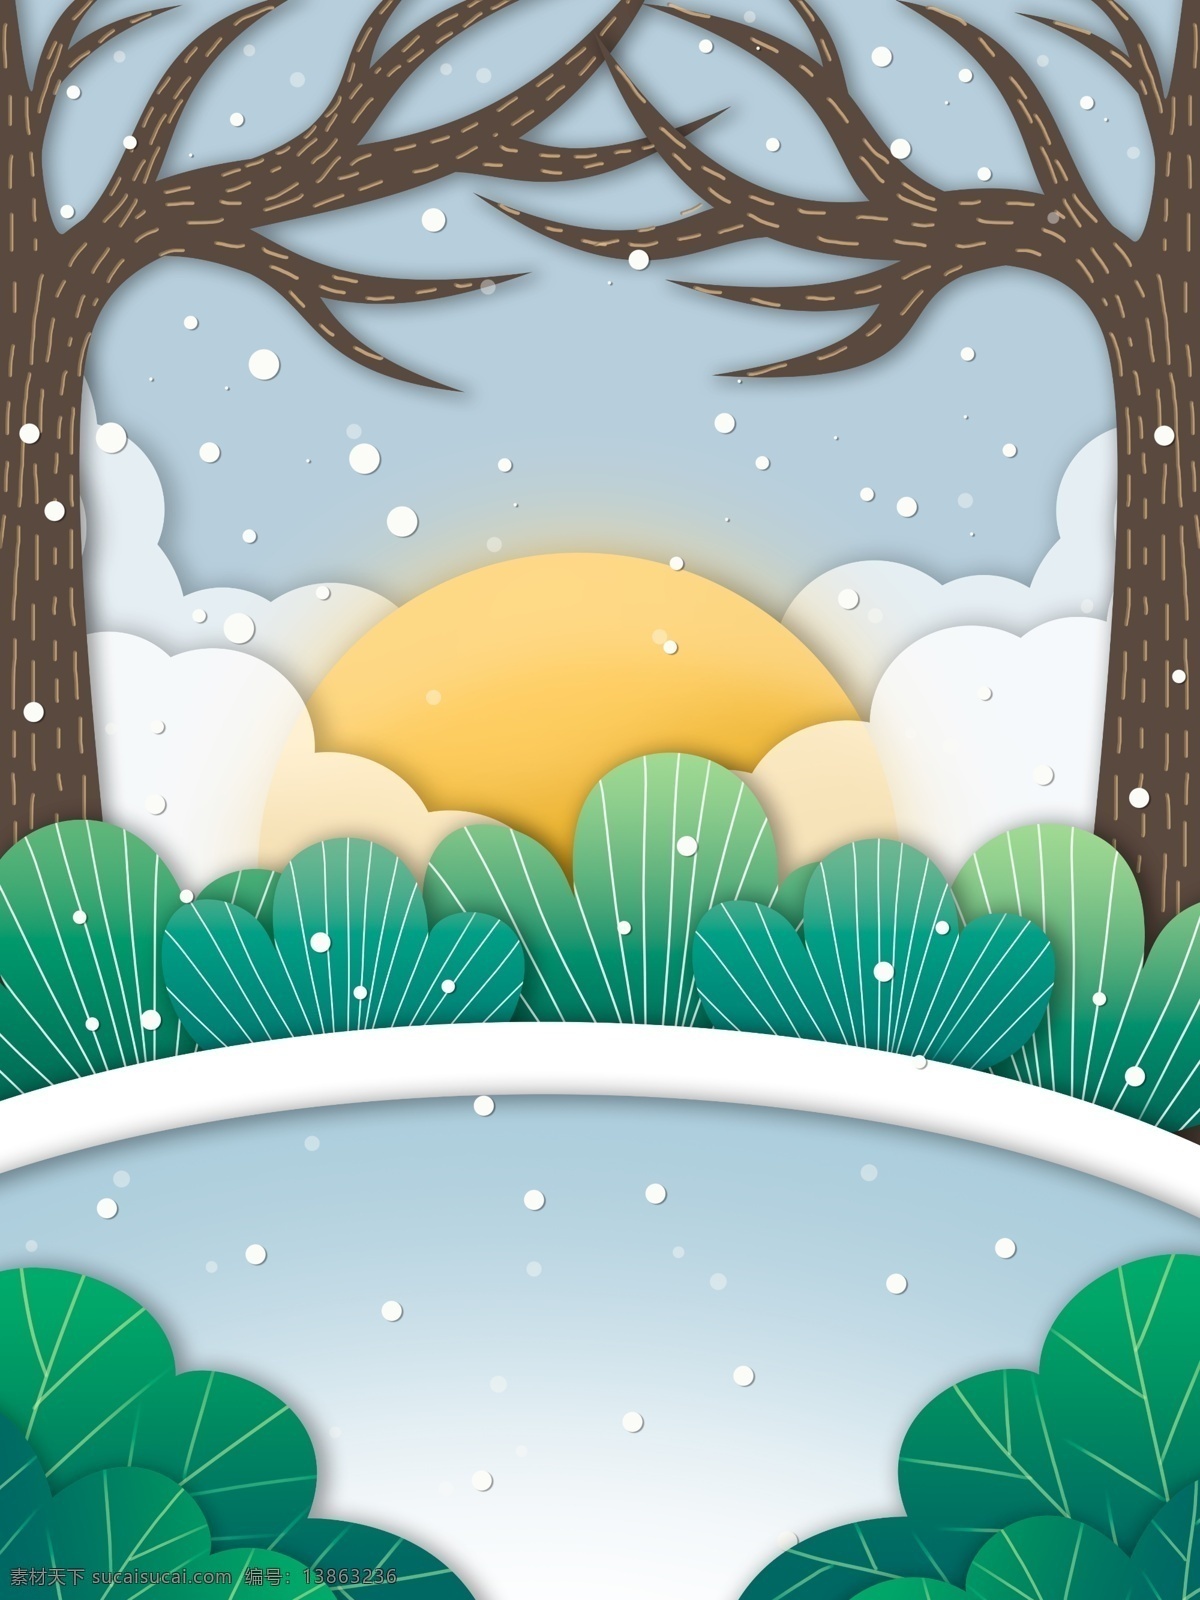 浪漫 冬季 下雪 树林 插画 背景 雪花 冬天背景 唯美雪地 雪景 彩绘背景 大寒背景 树木